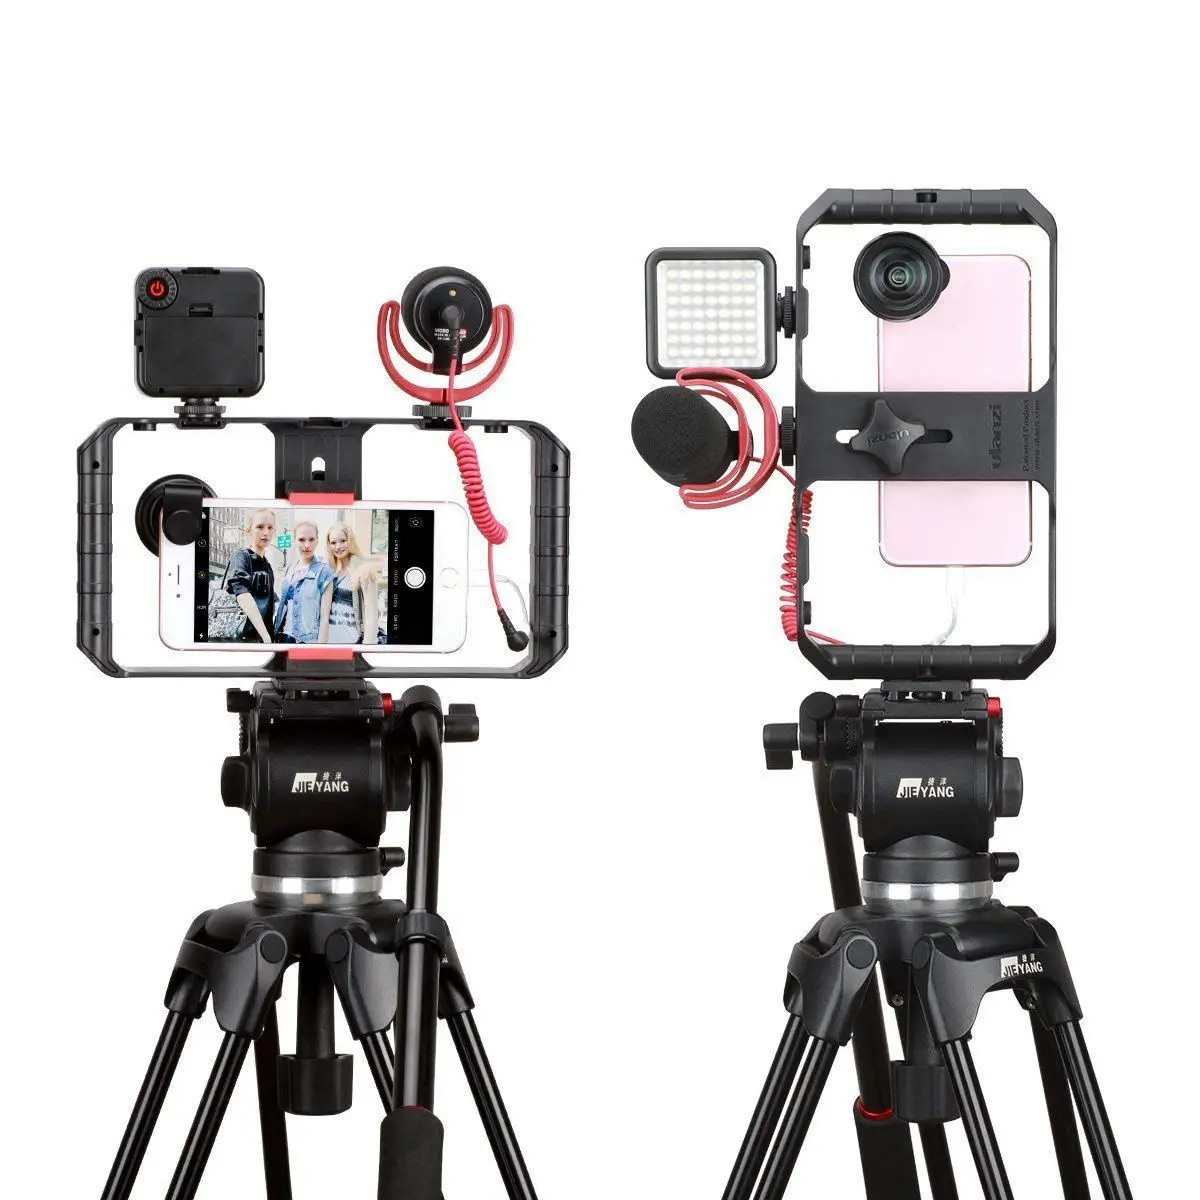 Смартфон киносъемок с функцией непрерывного изменения w 3 креплением для вспышки «Холодный башмак», для видеокамеры смартфона стабилизатор Gimble w 1/4 дюймов винт для iPhone X 8 7 6 plus H